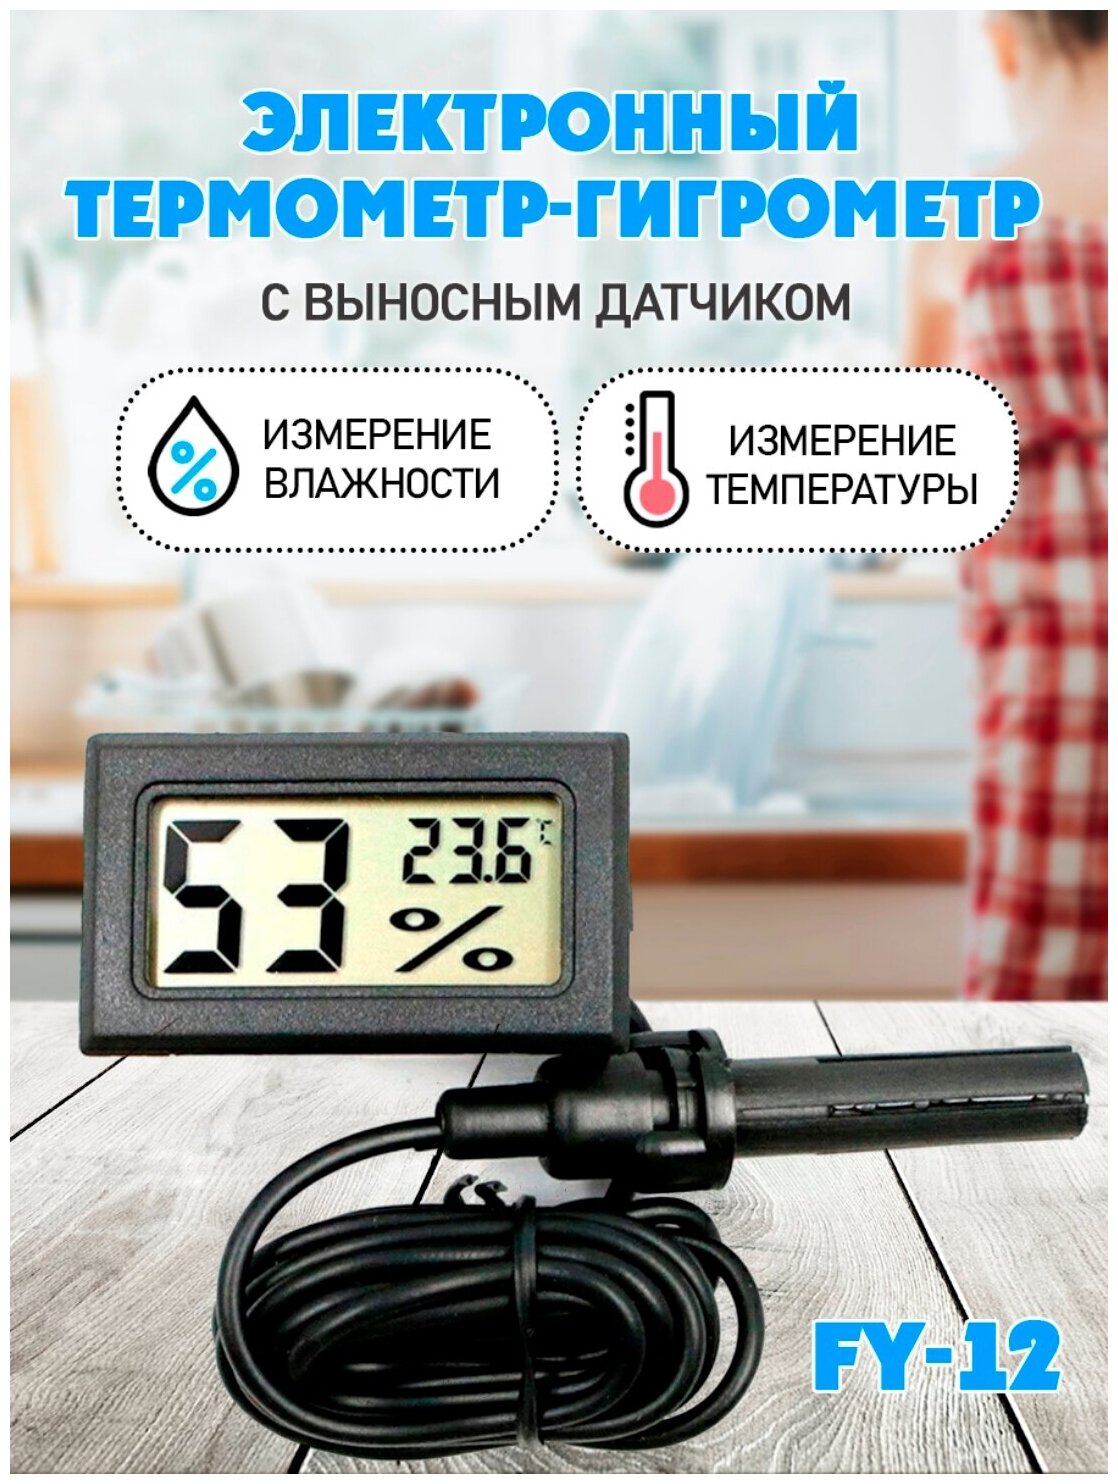 Термометр-гигрометр электронный FY 12 ЖК дисплей с выносным датчиком цвет - черный